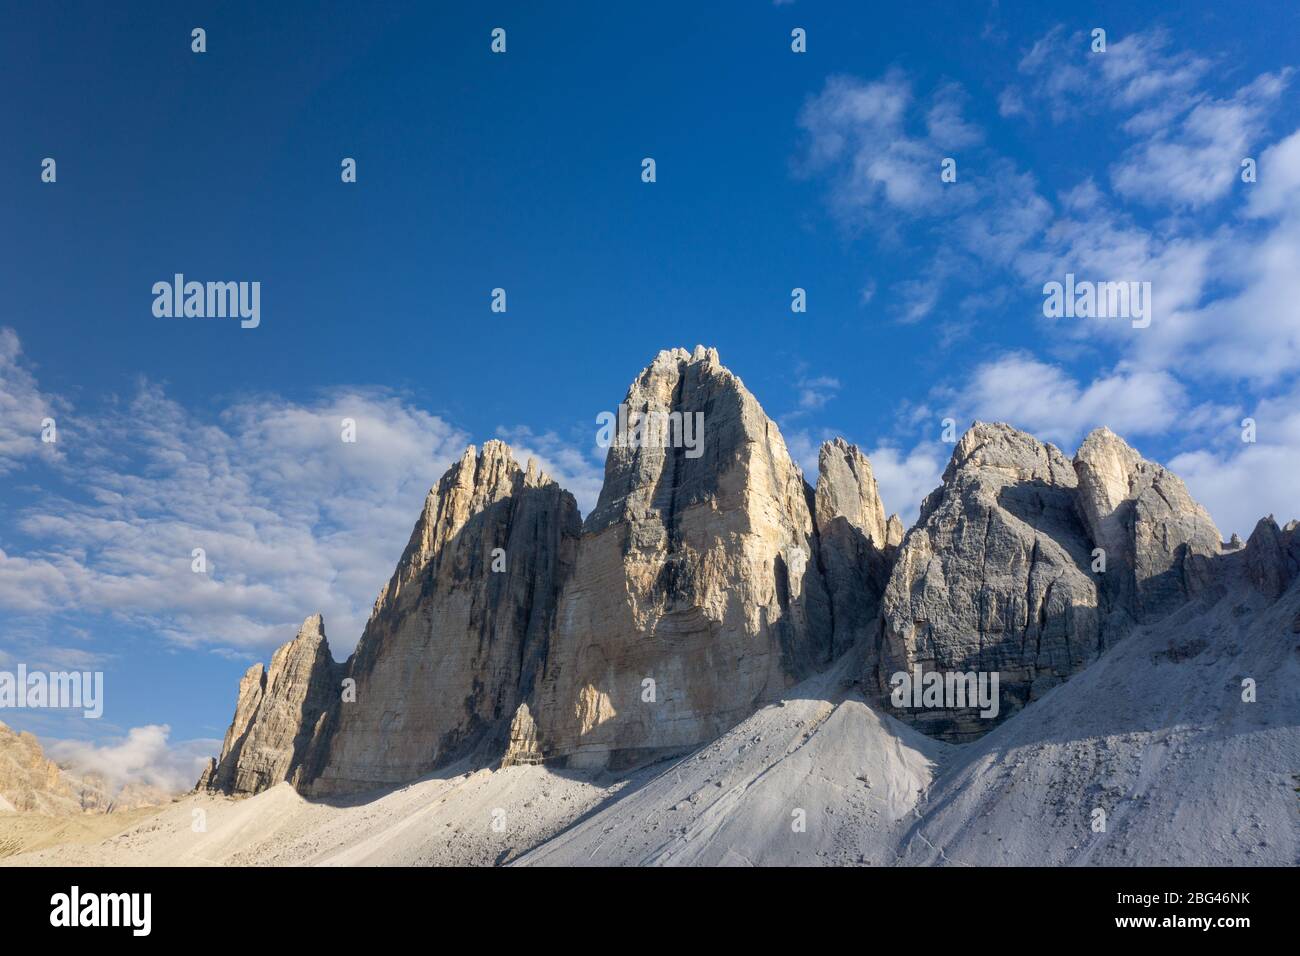 Site de l'UNESCO de Tre Cime di Lavaredo dans les Dolomites italiennes Banque D'Images